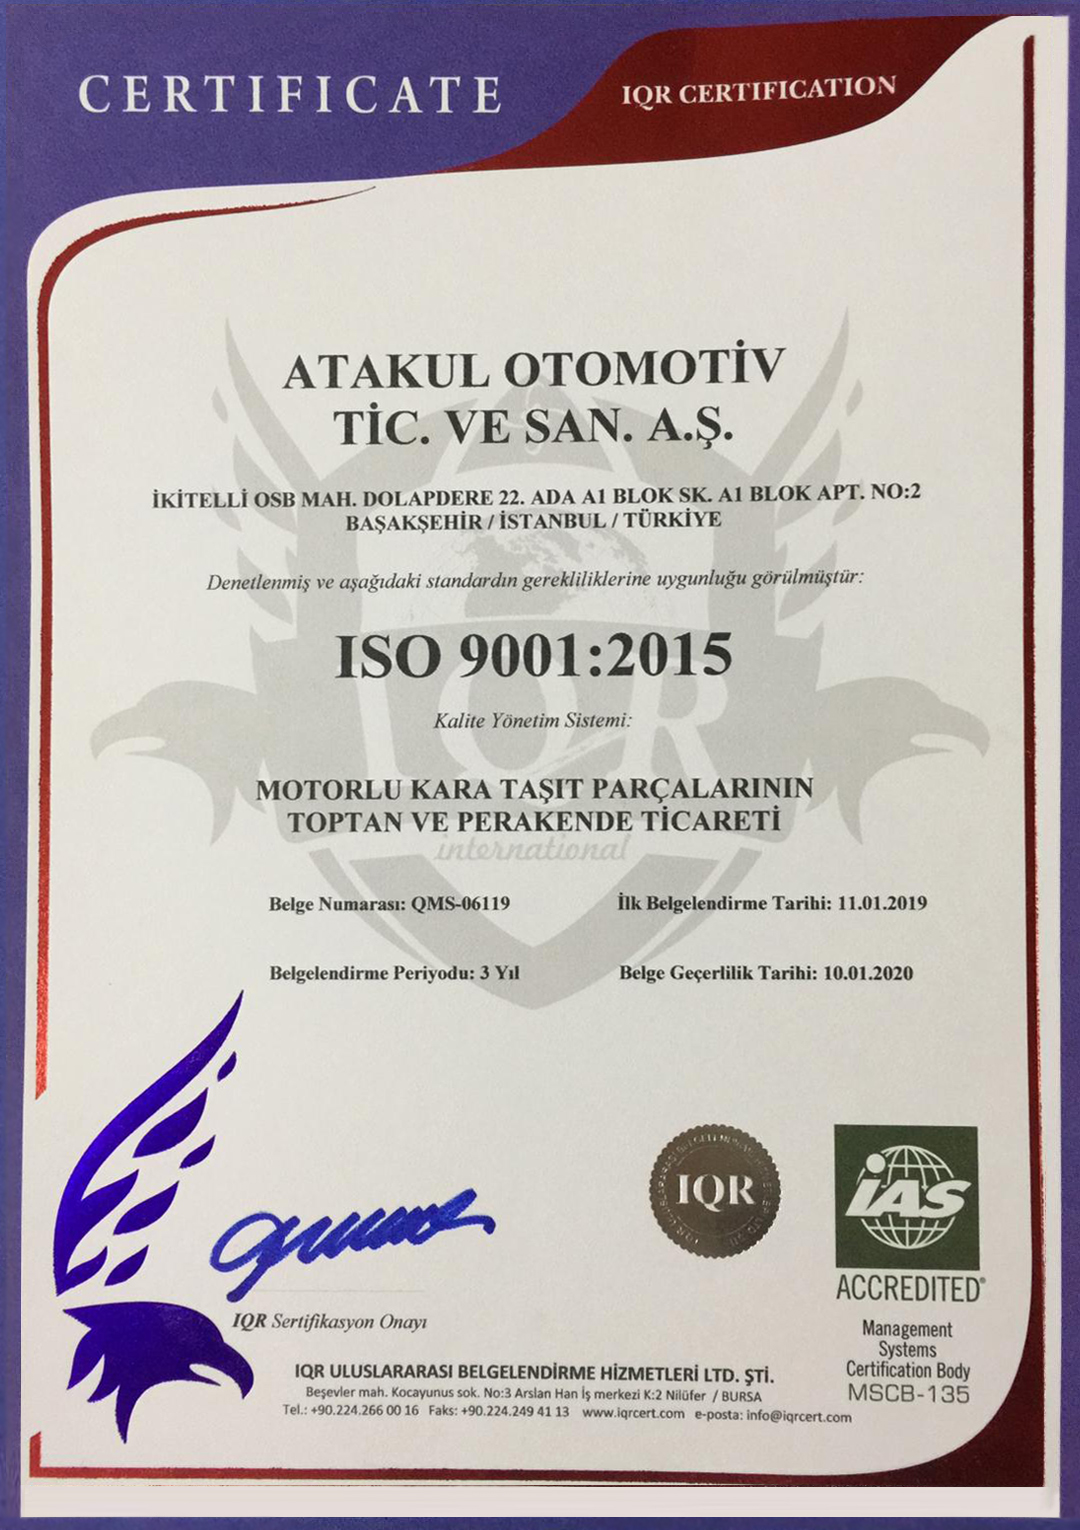 ATAKUL OTOMOTİV Système de Management de la Qualité ISO 9001 : 2015